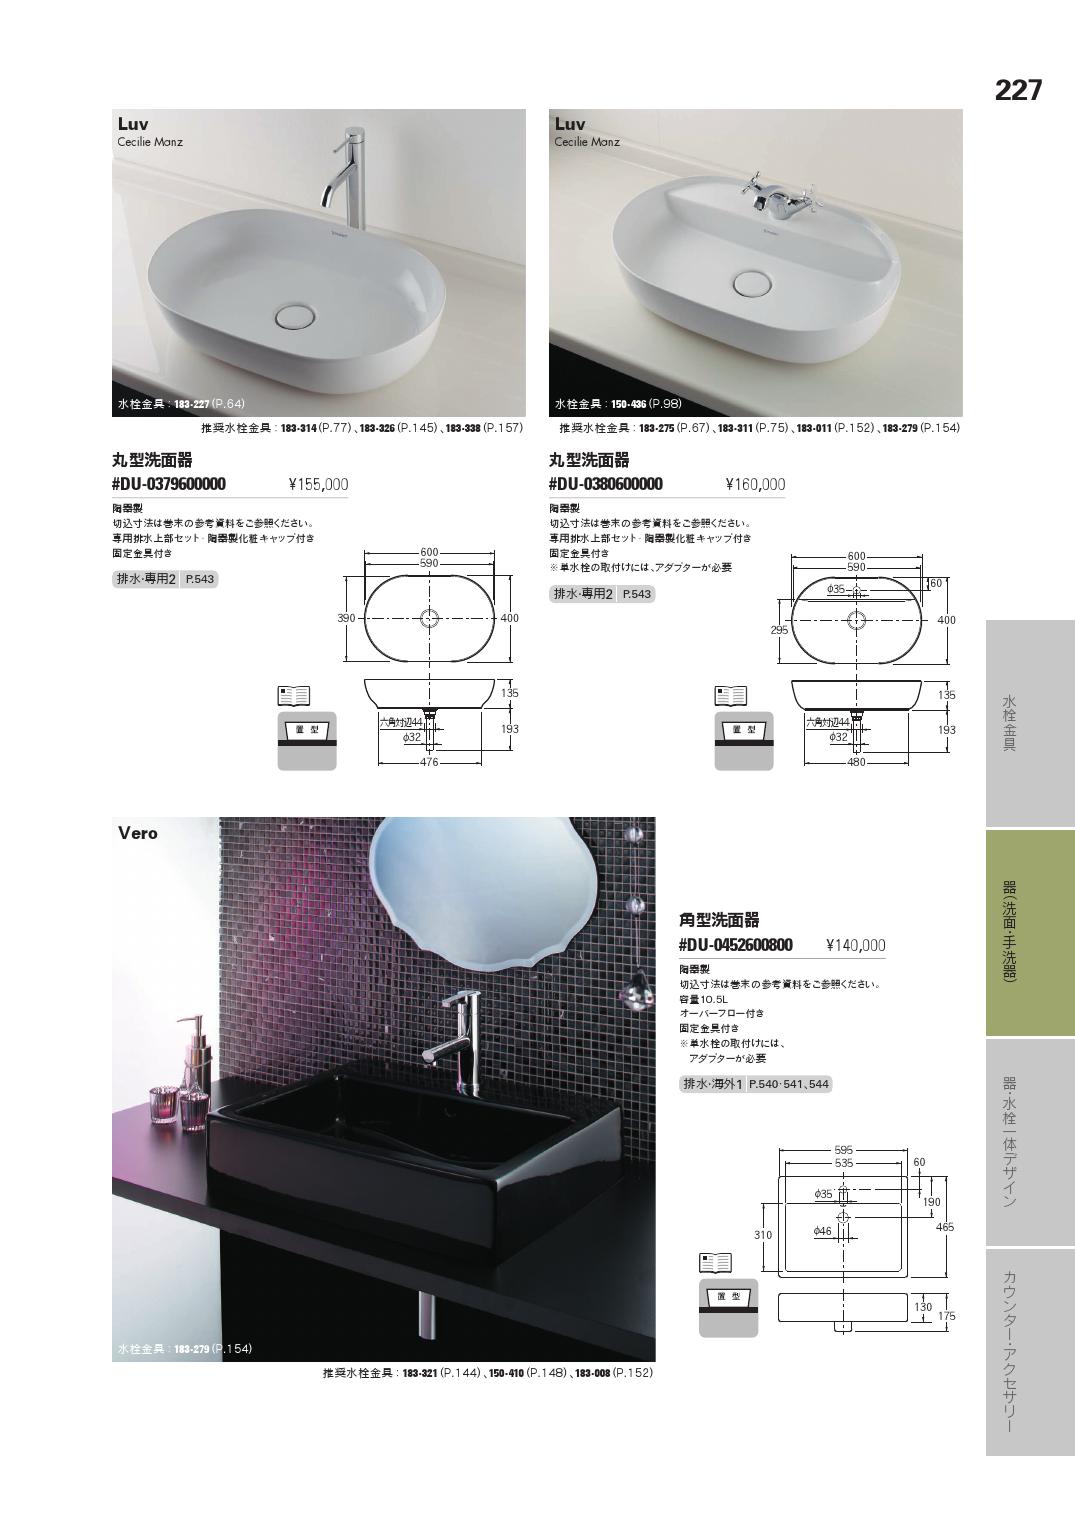 カクダイ 角型洗面器単品 デュラビット #DU-2355600000 - 3